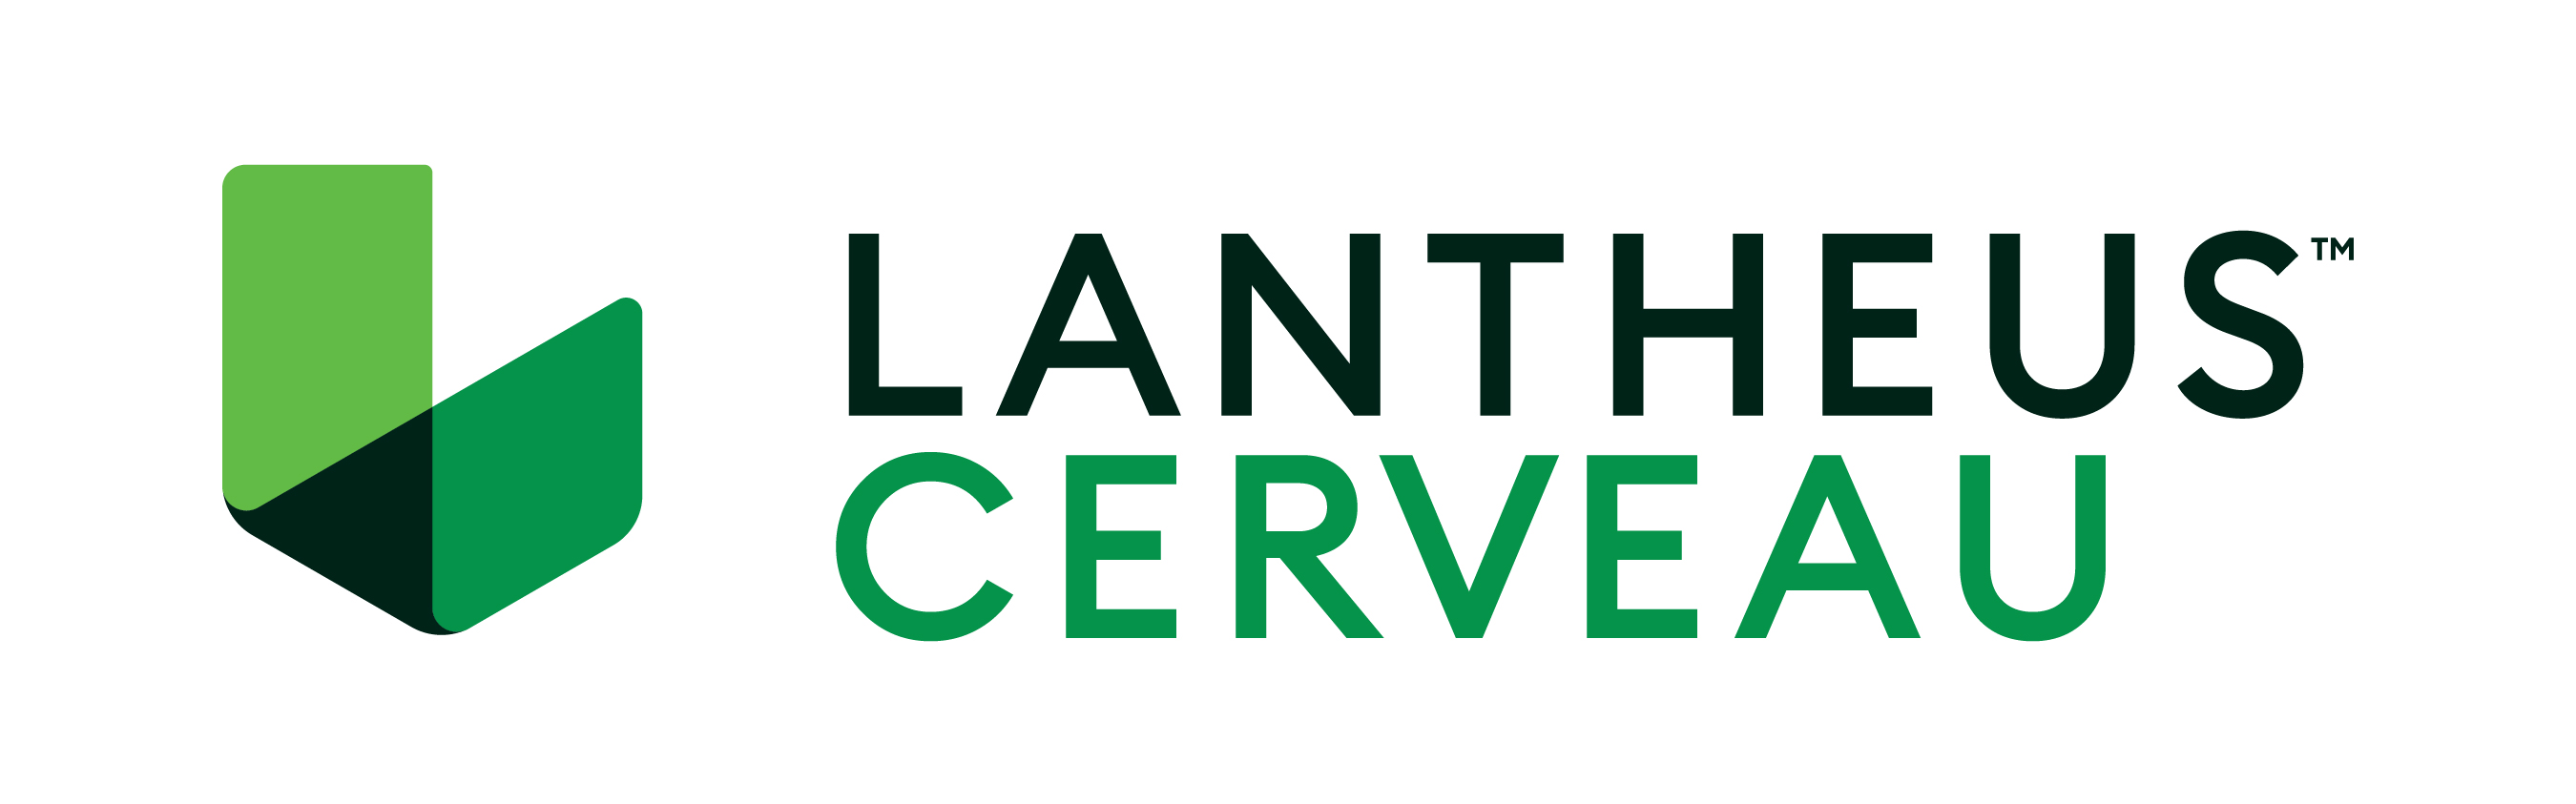 Logotipo de Lantheus Cerveau.jpg